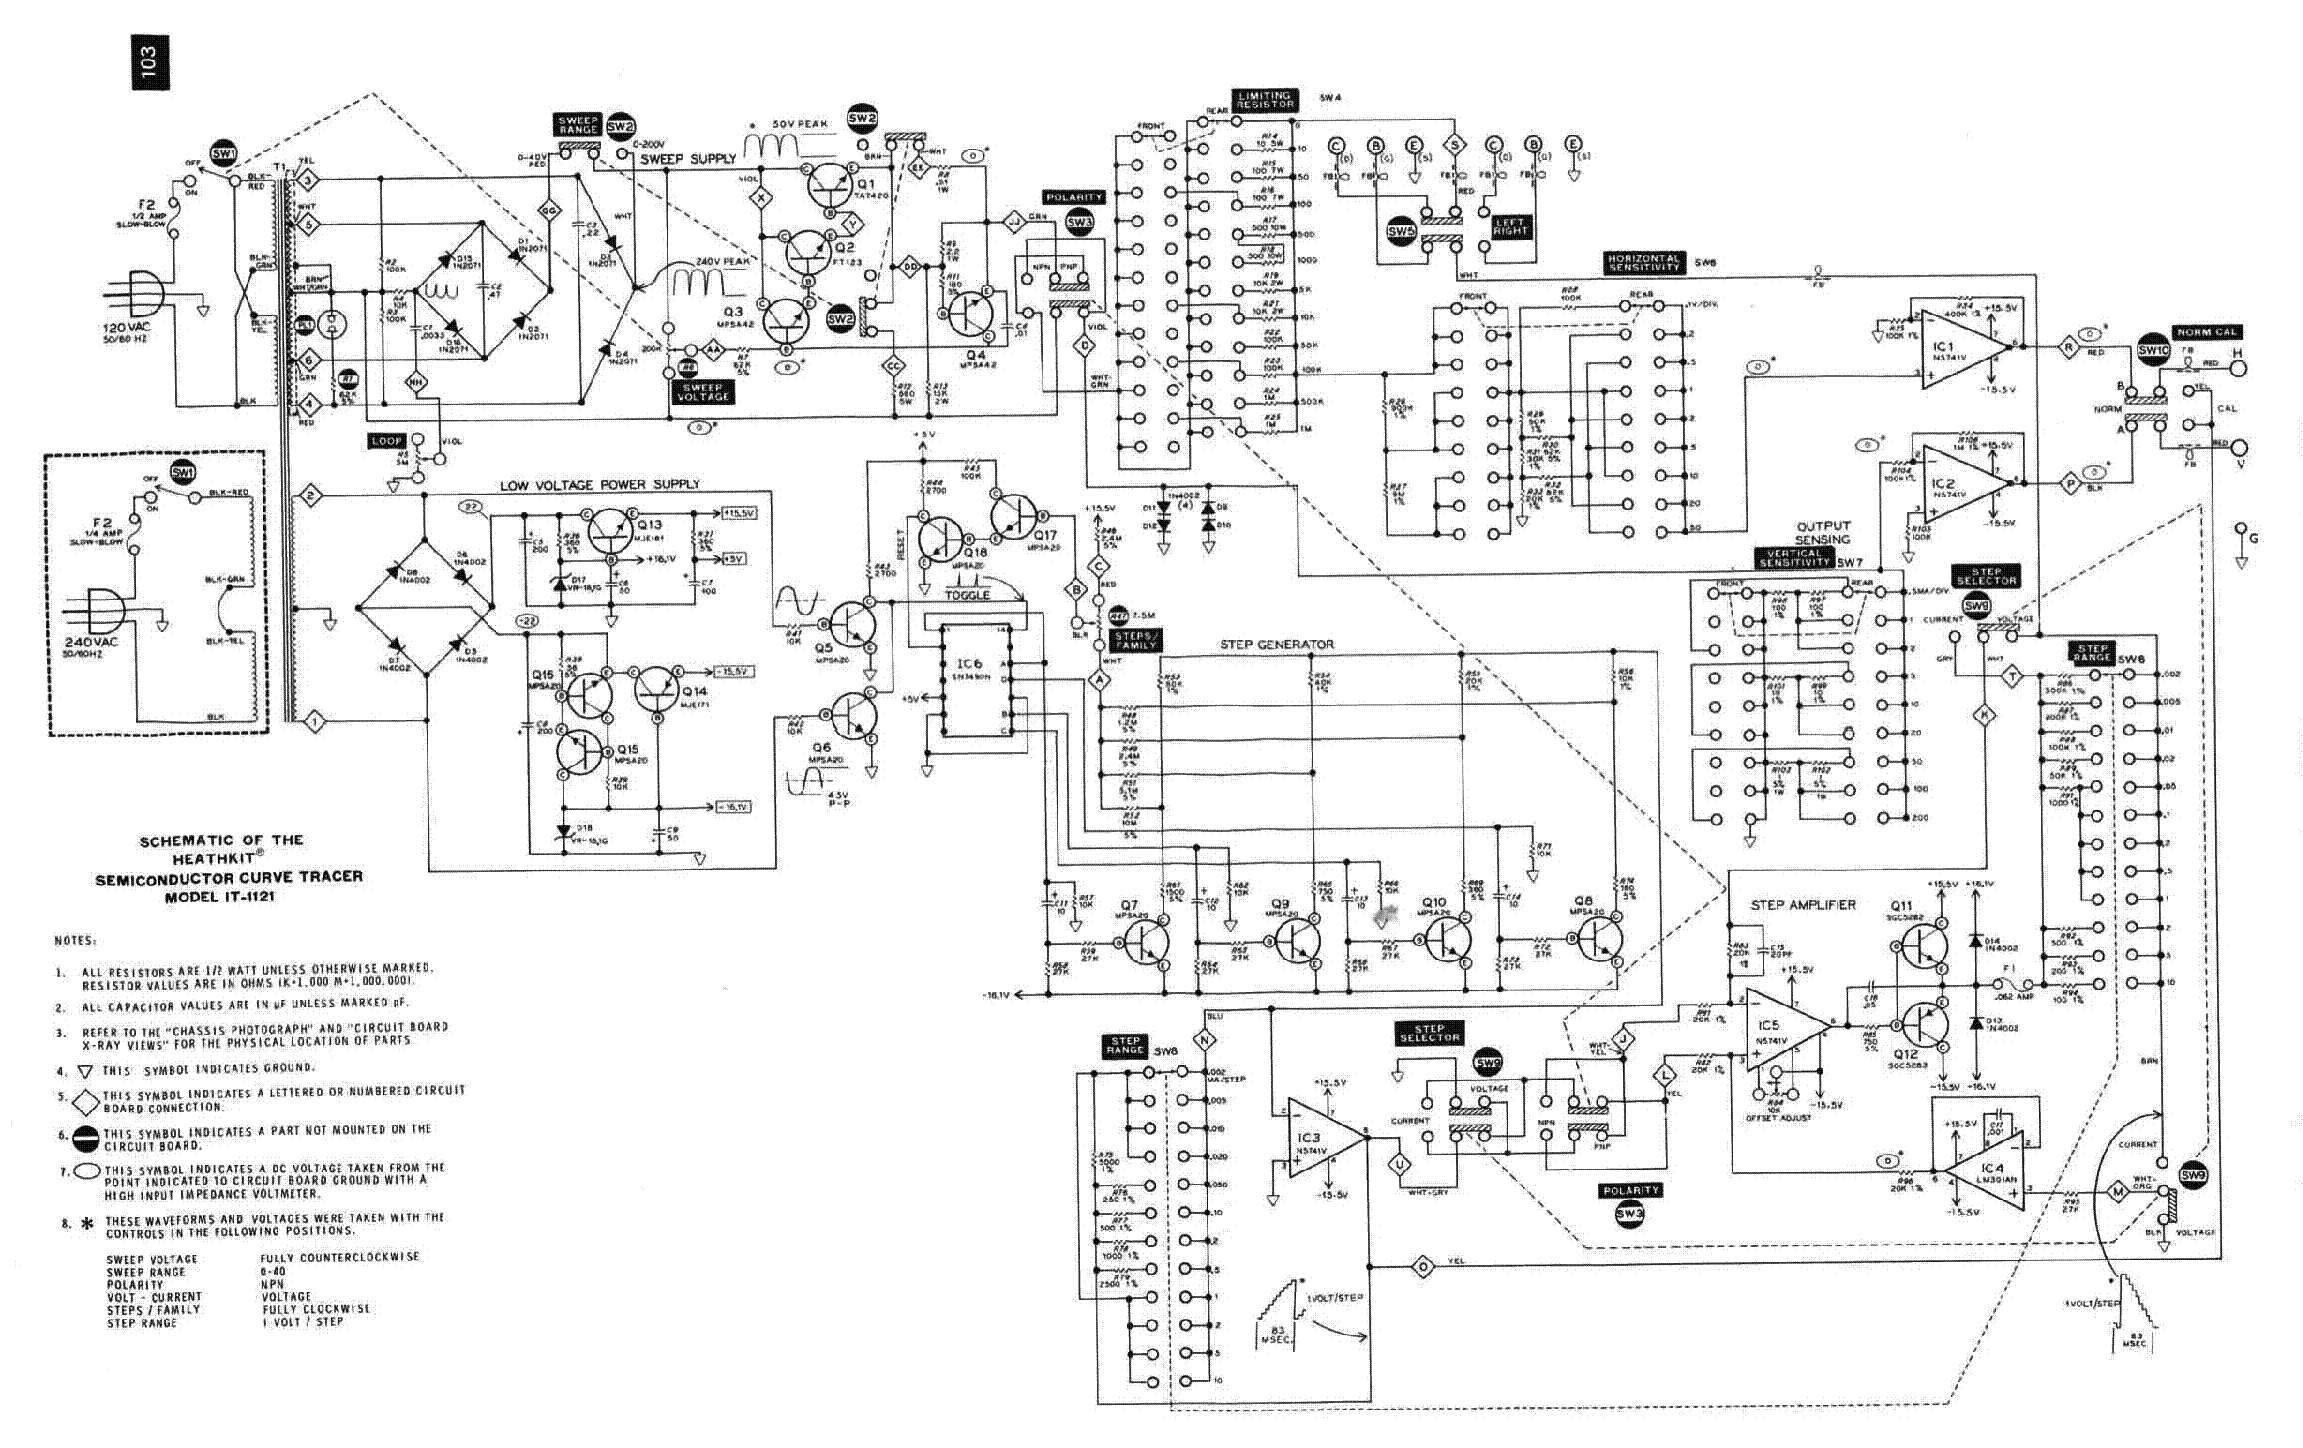 Assembly Manual-Anleitung für Heathkit IT-1121 